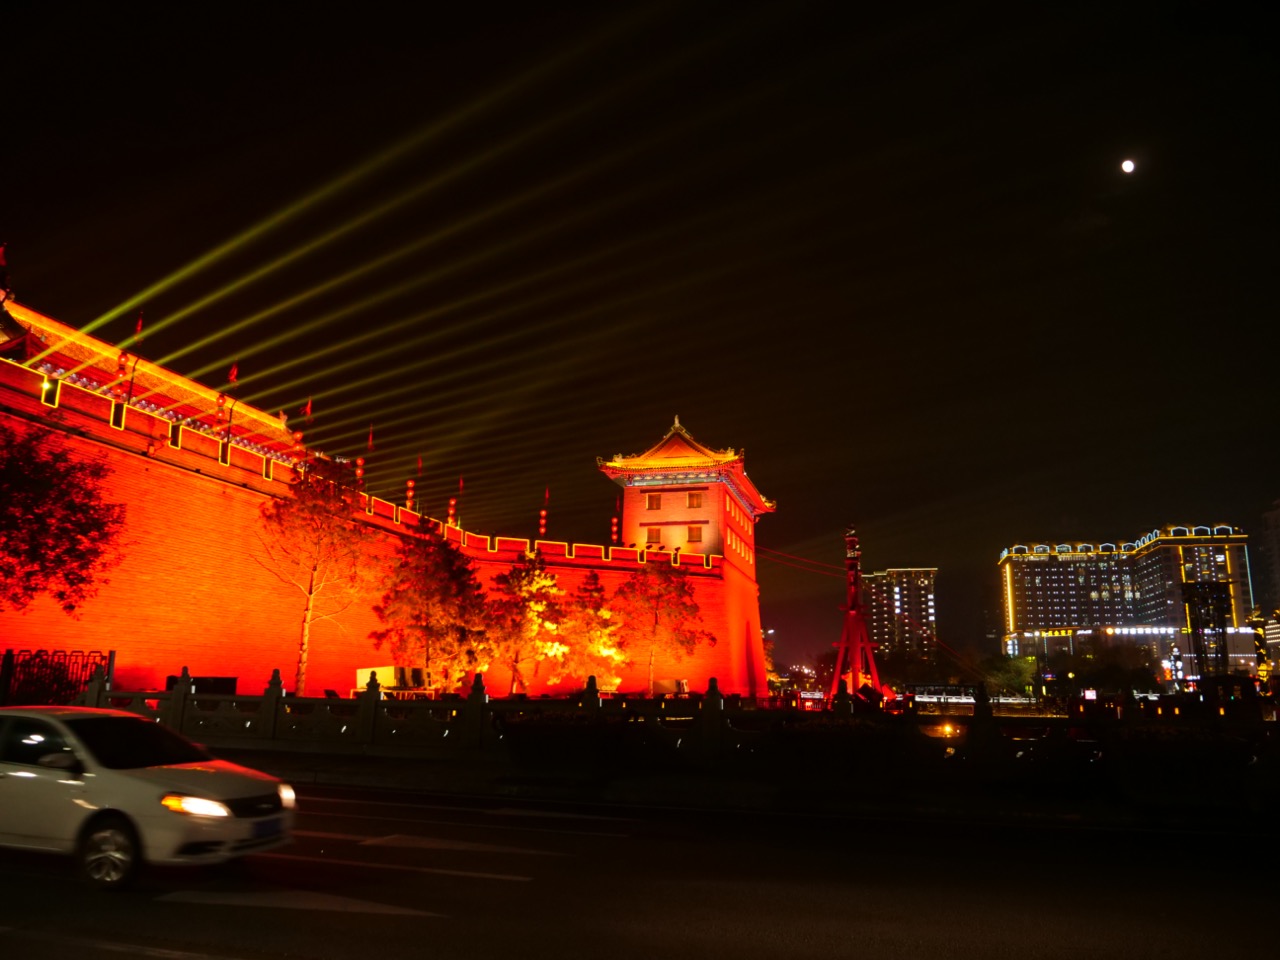 La belle ville fortifiée de Xi'an